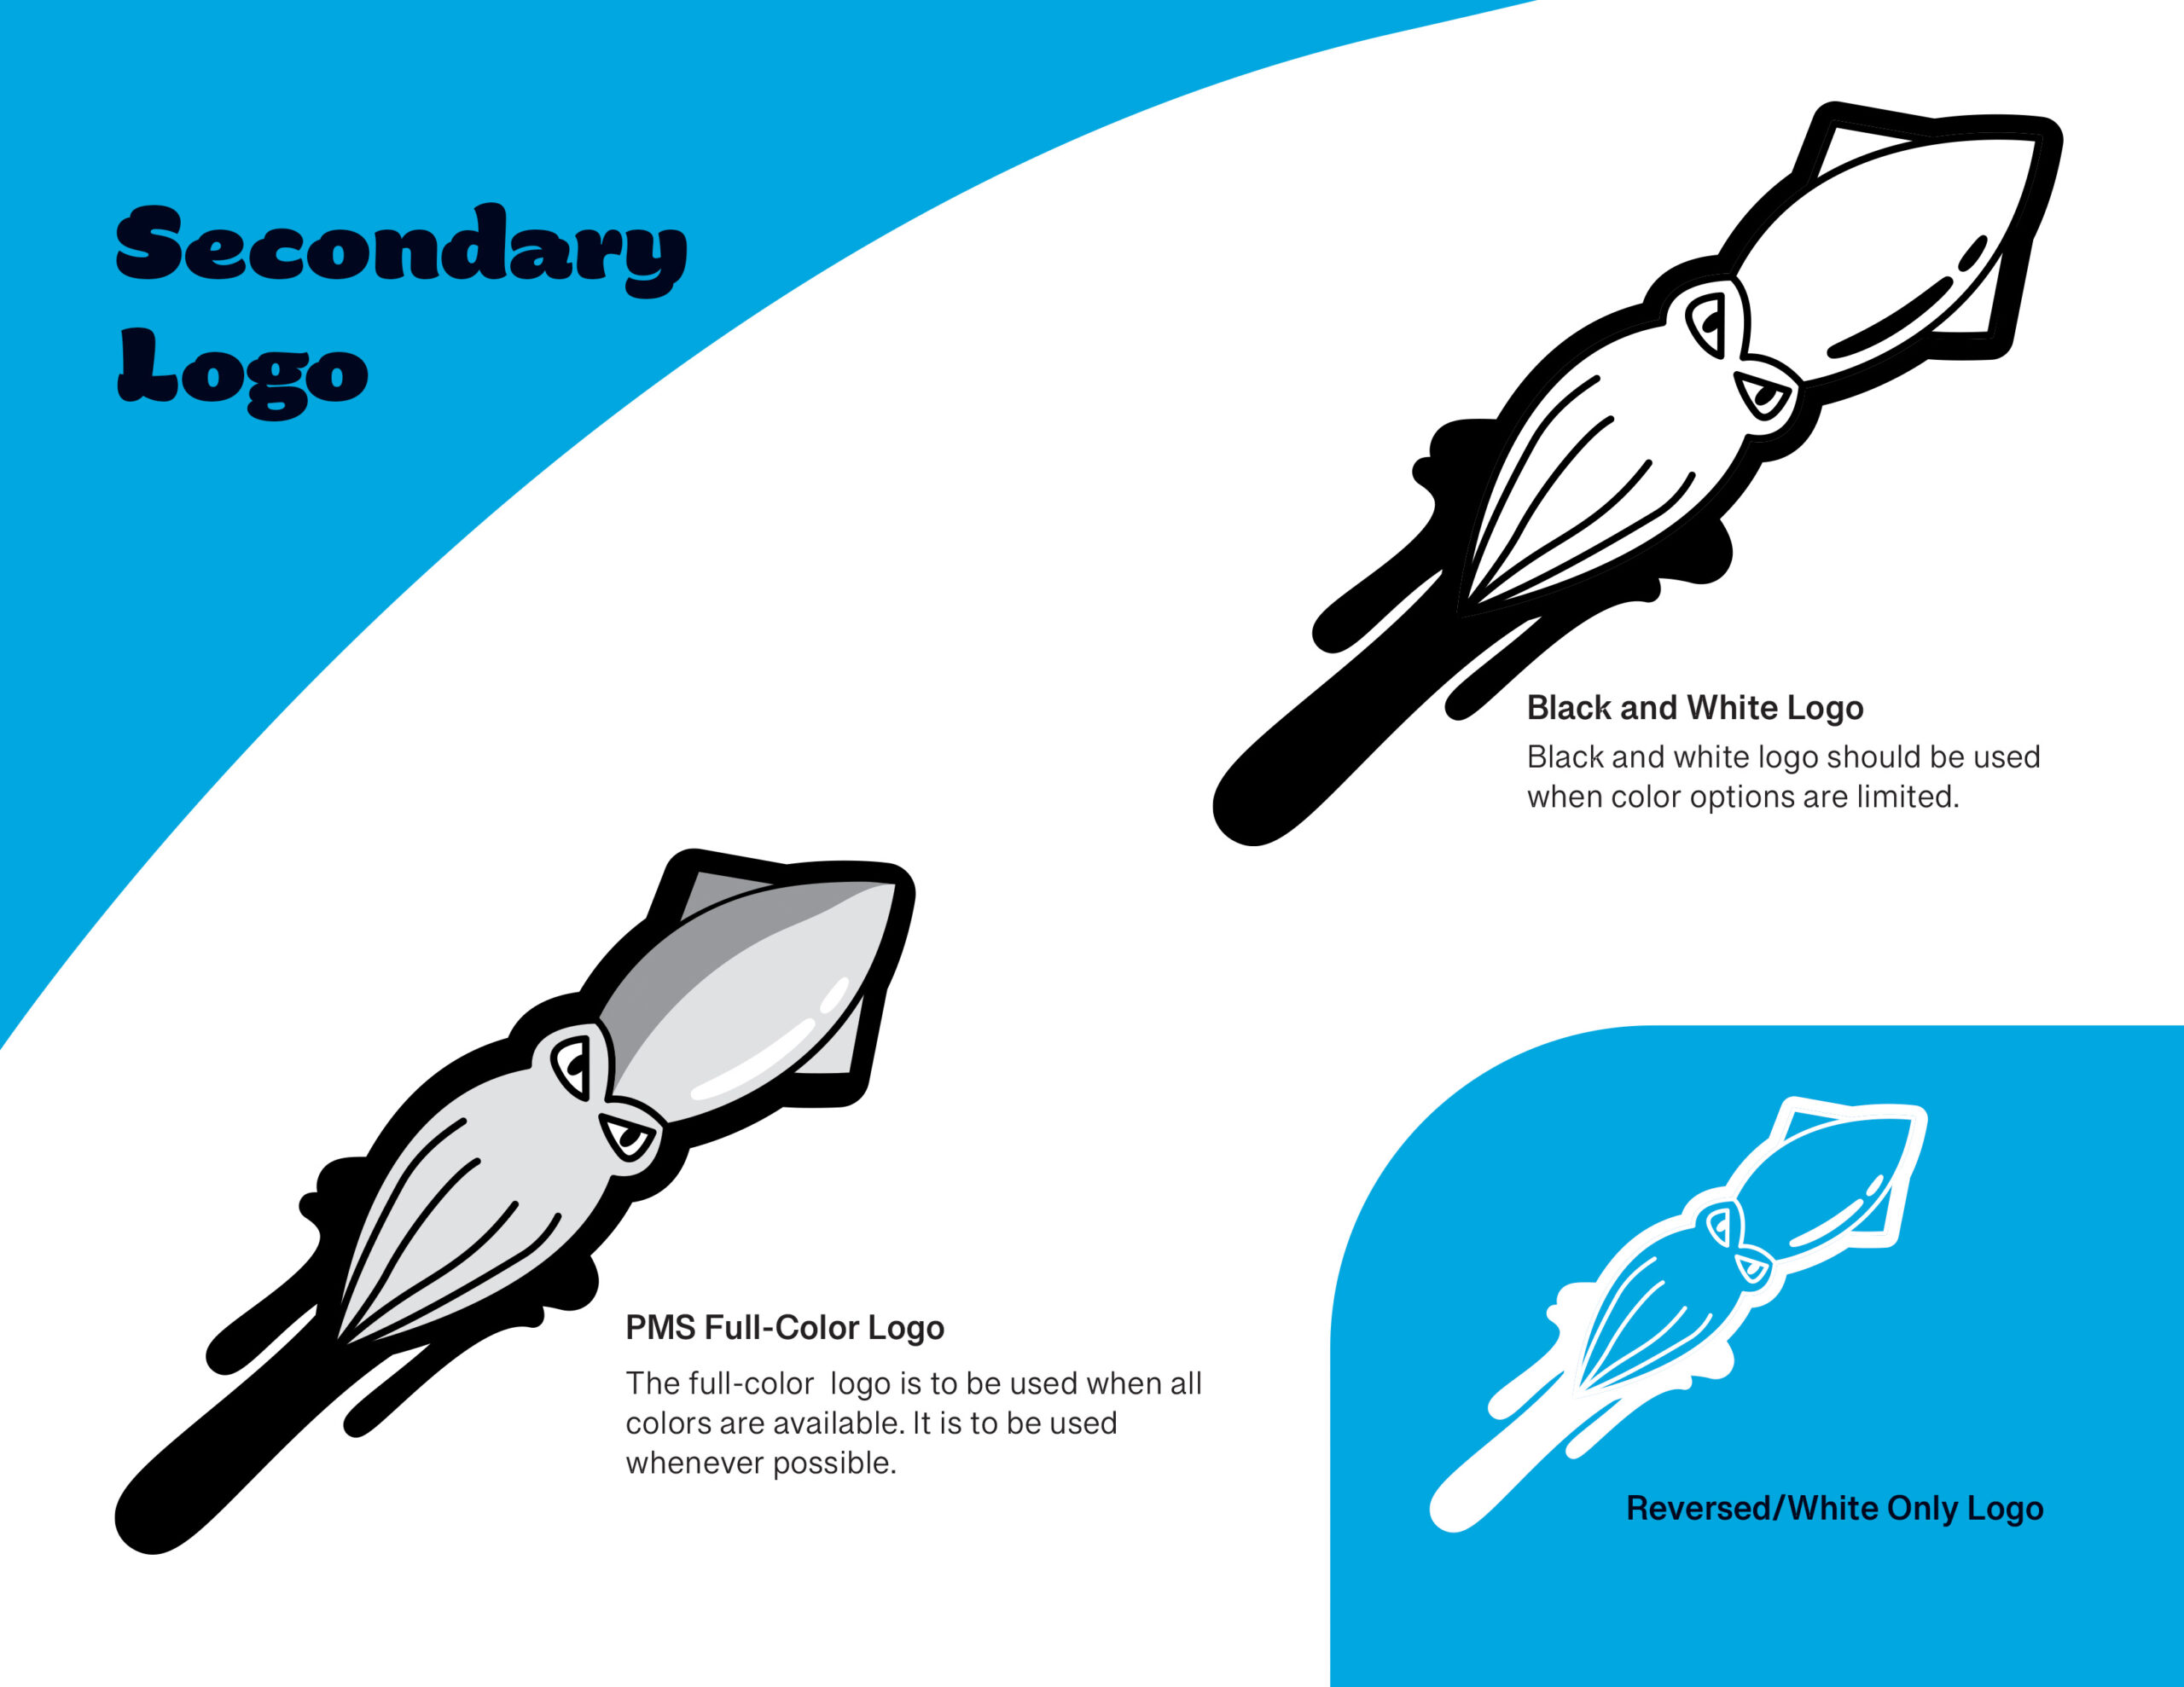 Secondary Squids Logos